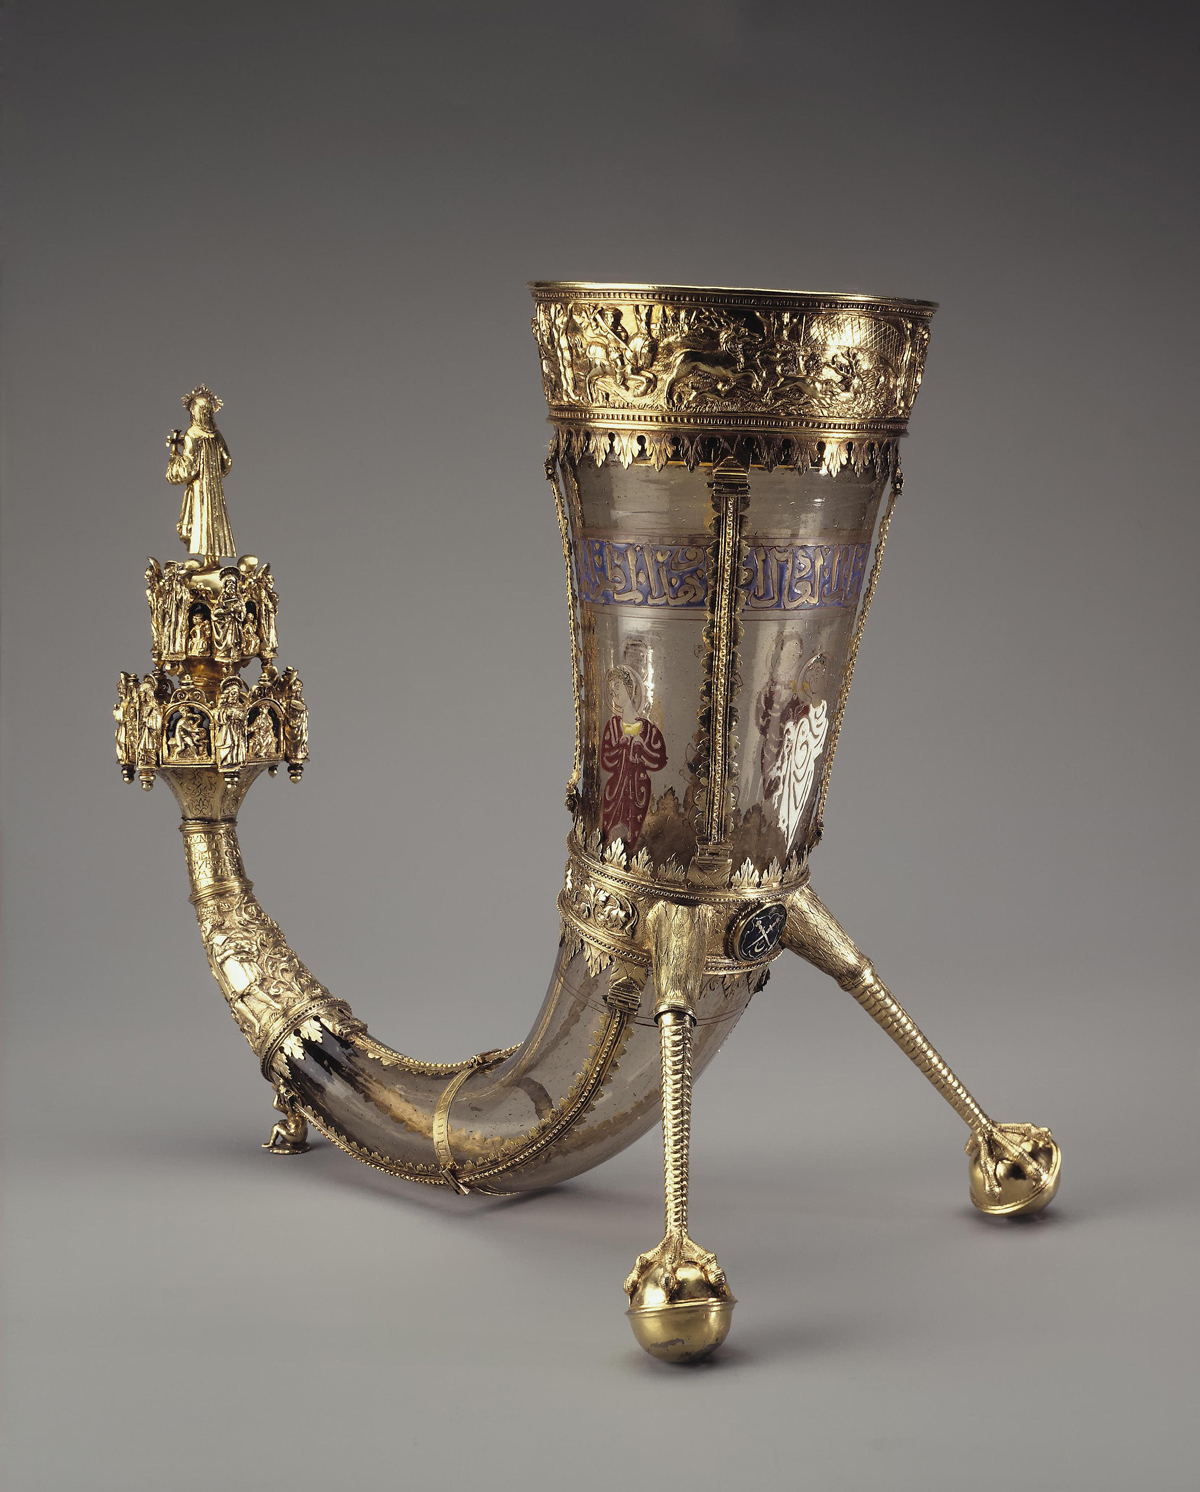 Syrisches Glas des 14. Jahrhunderts in Form eines Horns (Fassung von 1551), Glass, Emaille, Silber, H: 29,5 cm, vergoldet, (Foto: The State Hermitage Museum, St. Petersburg)